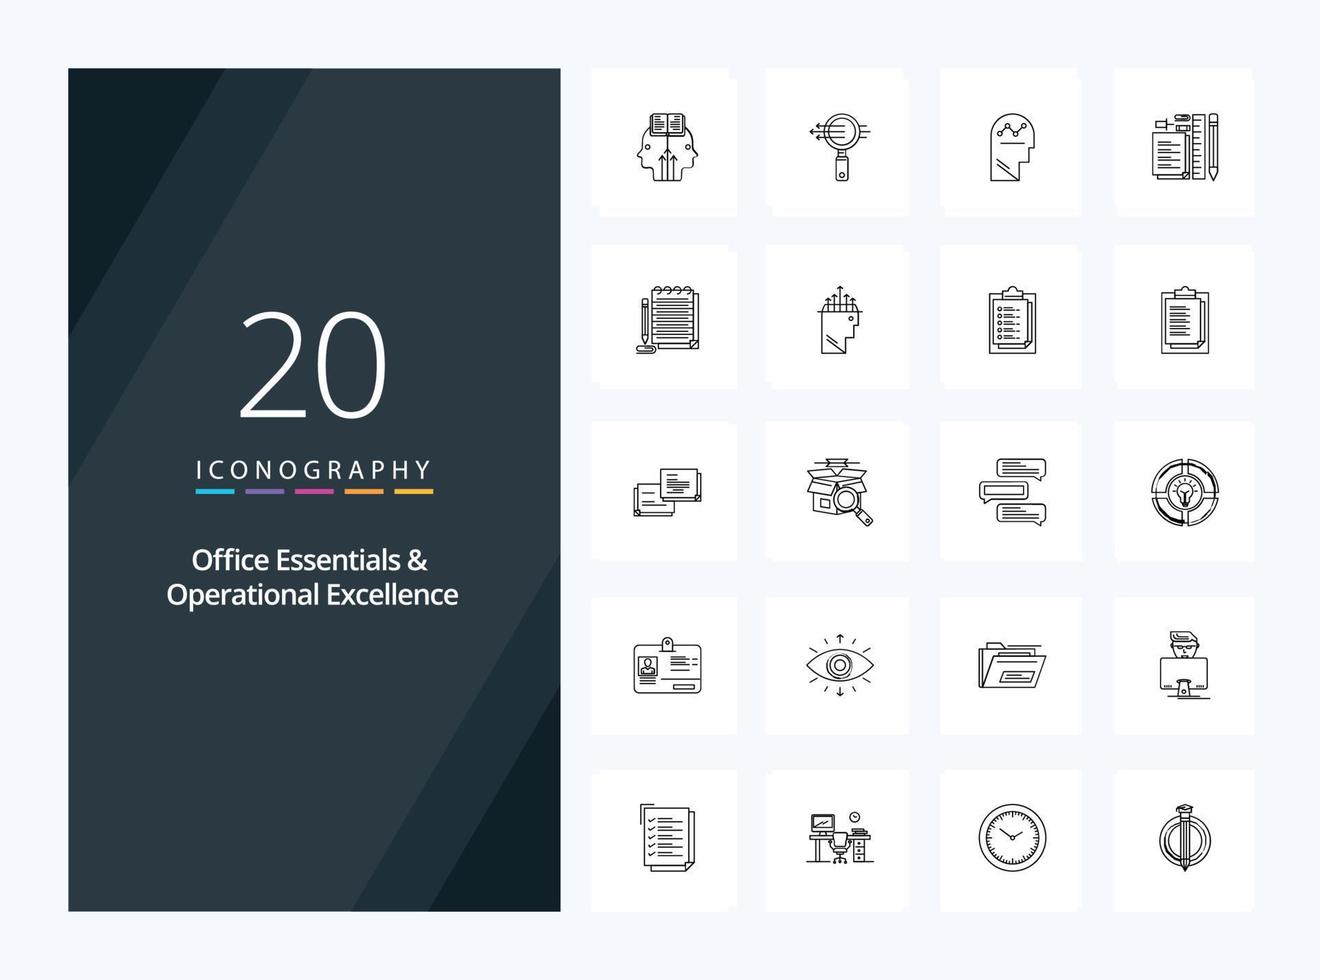 20 éléments essentiels de bureau et icône de contour d'excellence opérationnelle pour la présentation vecteur